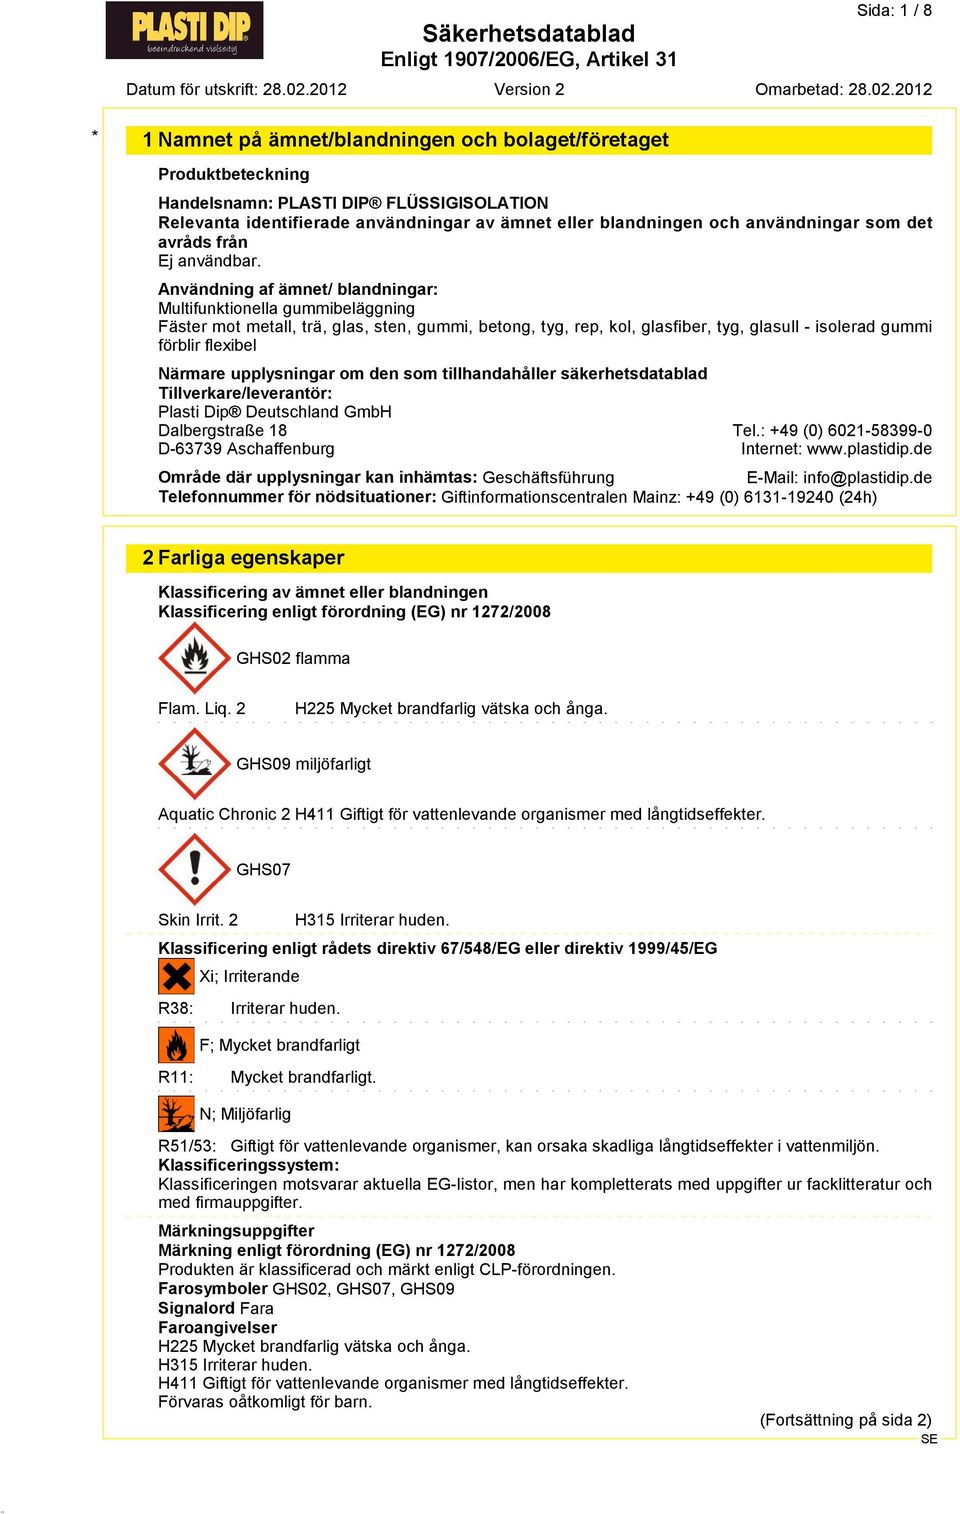 upplysningar om den som tillhandahåller säkerhetsdatablad Tillverkare/leverantör: Plasti Dip Deutschland GmbH Dalbergstraße 18 D*63739 Aschaffenburg Tel.: +49 (0) 6021*58399*0 Internet: www.plastidip.